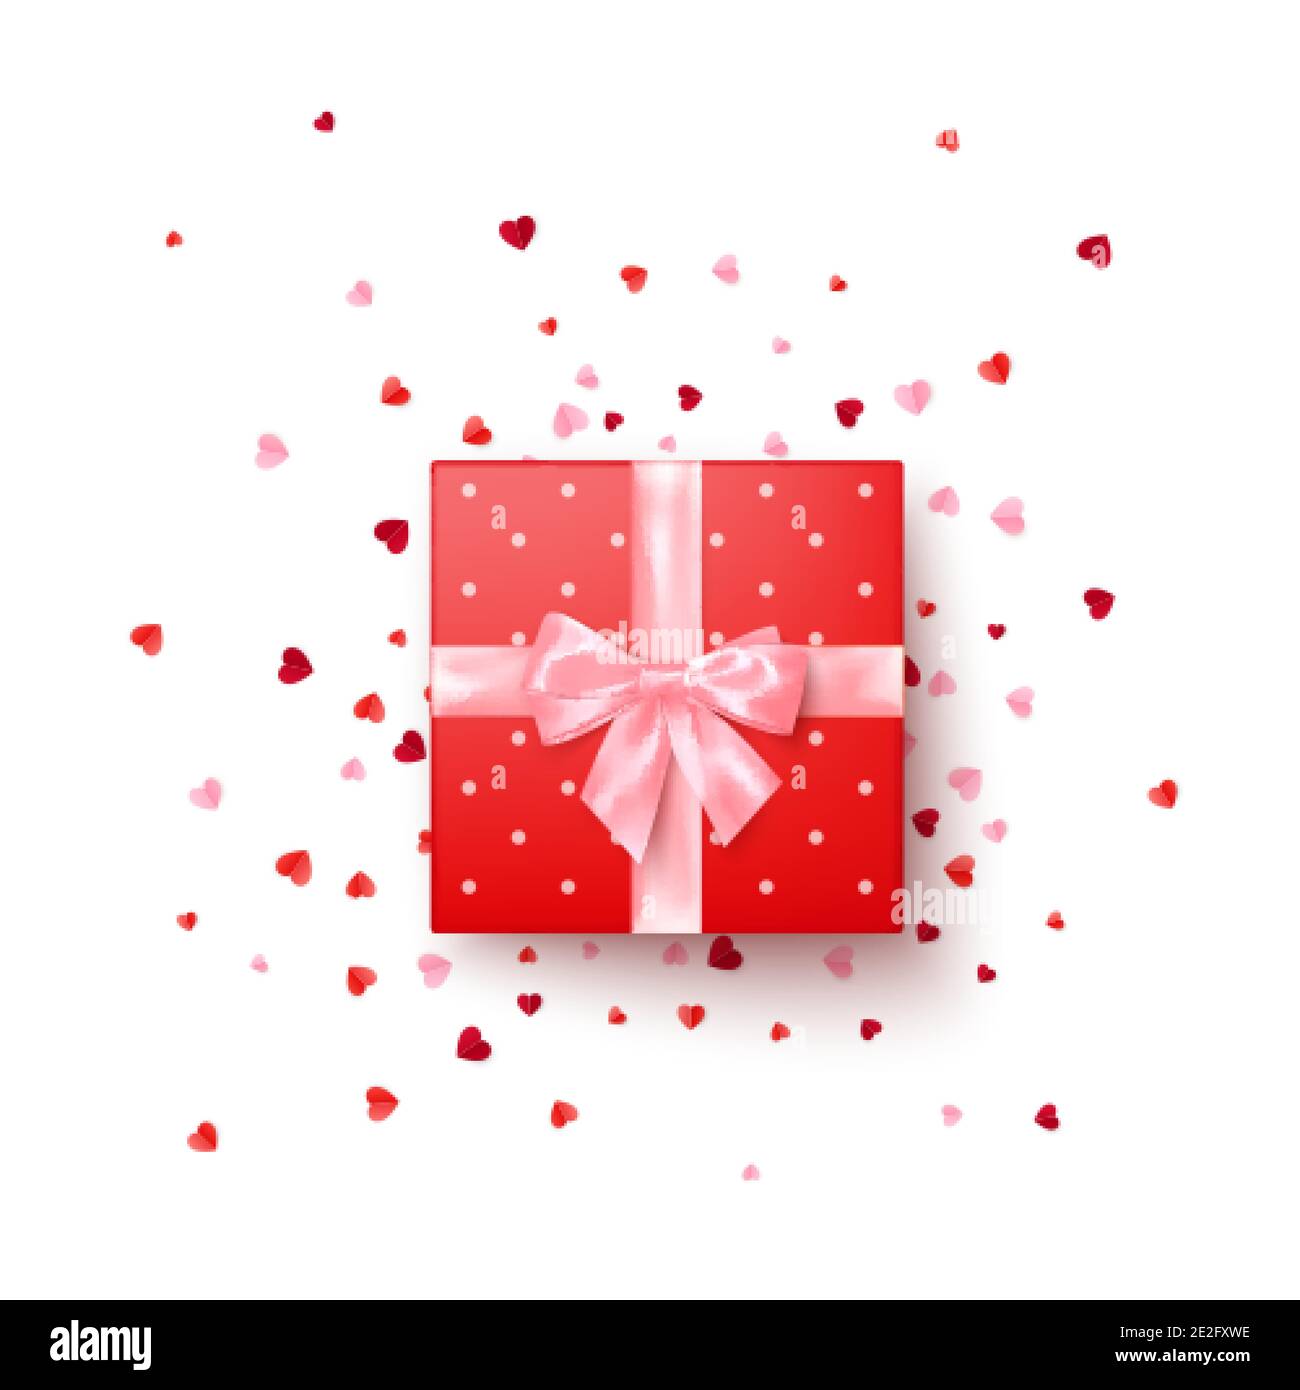 Realistische rote Geschenkbox mit rosa Seidenschleife verziert Konfetti Draufsicht. Vektorgrafik Stock Vektor